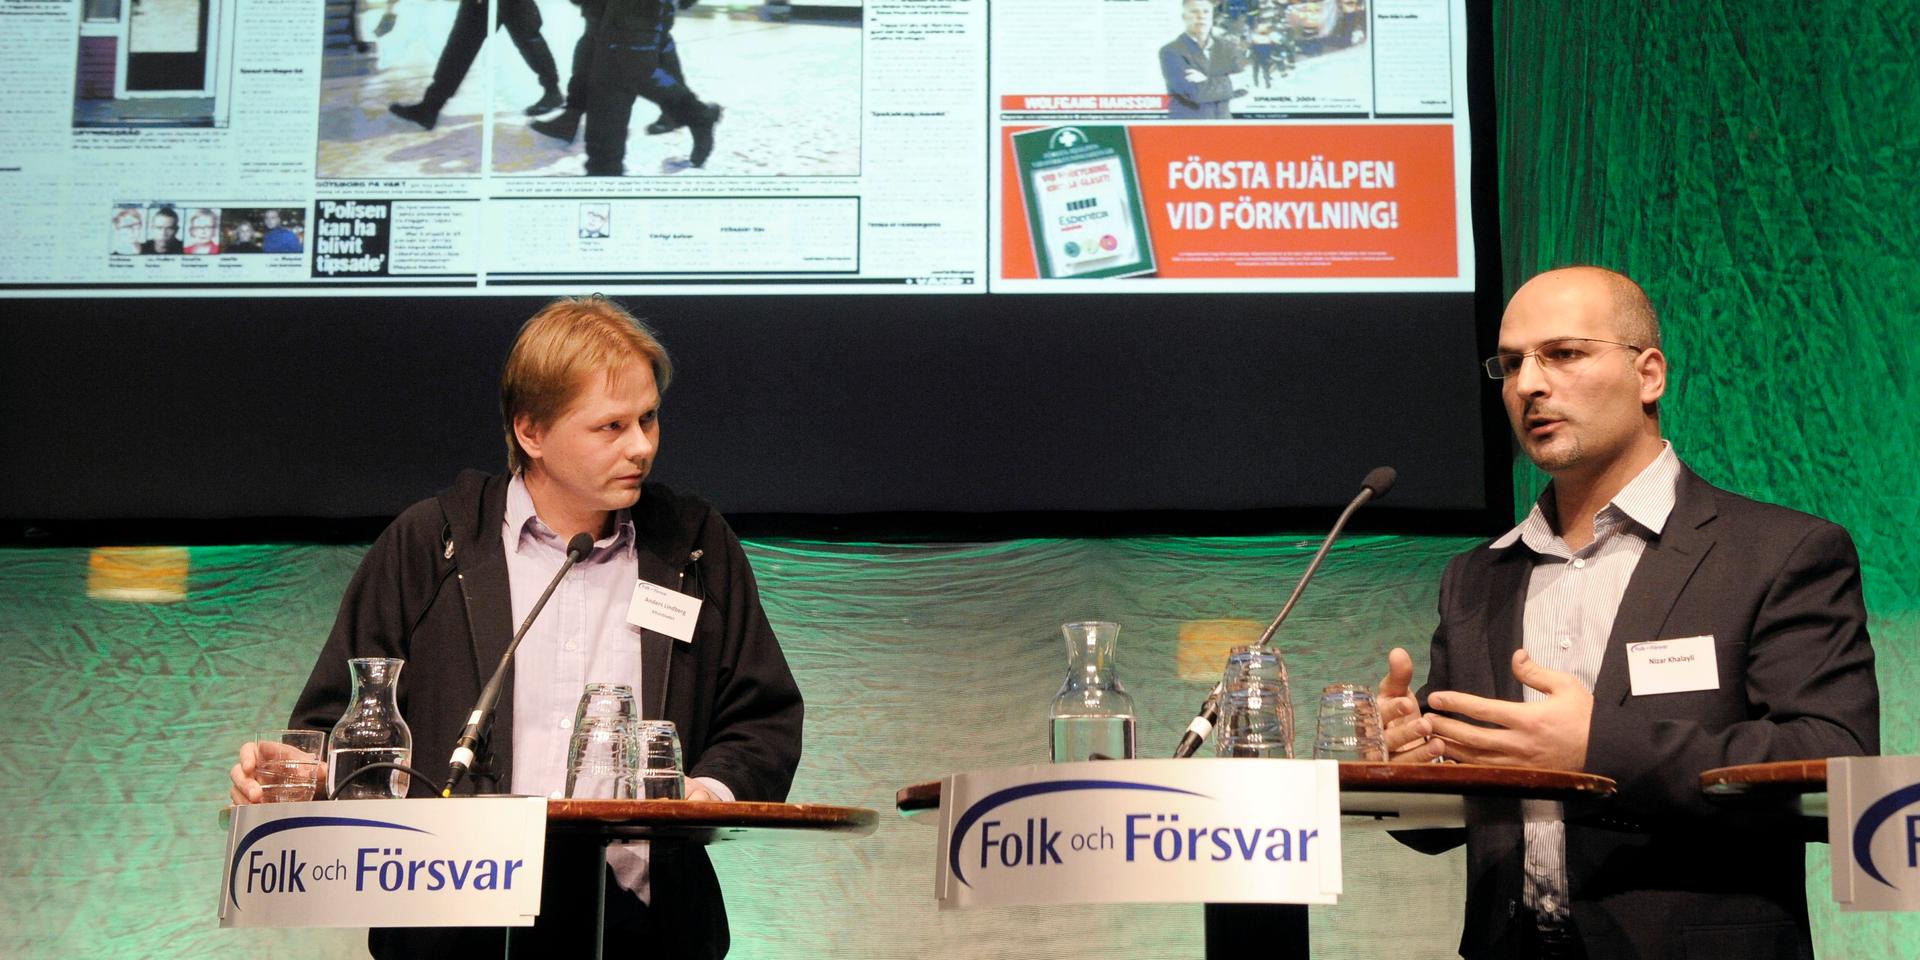 Anders Lindberg, till vänster, talar på rikskonferensen Folk och Försvar.